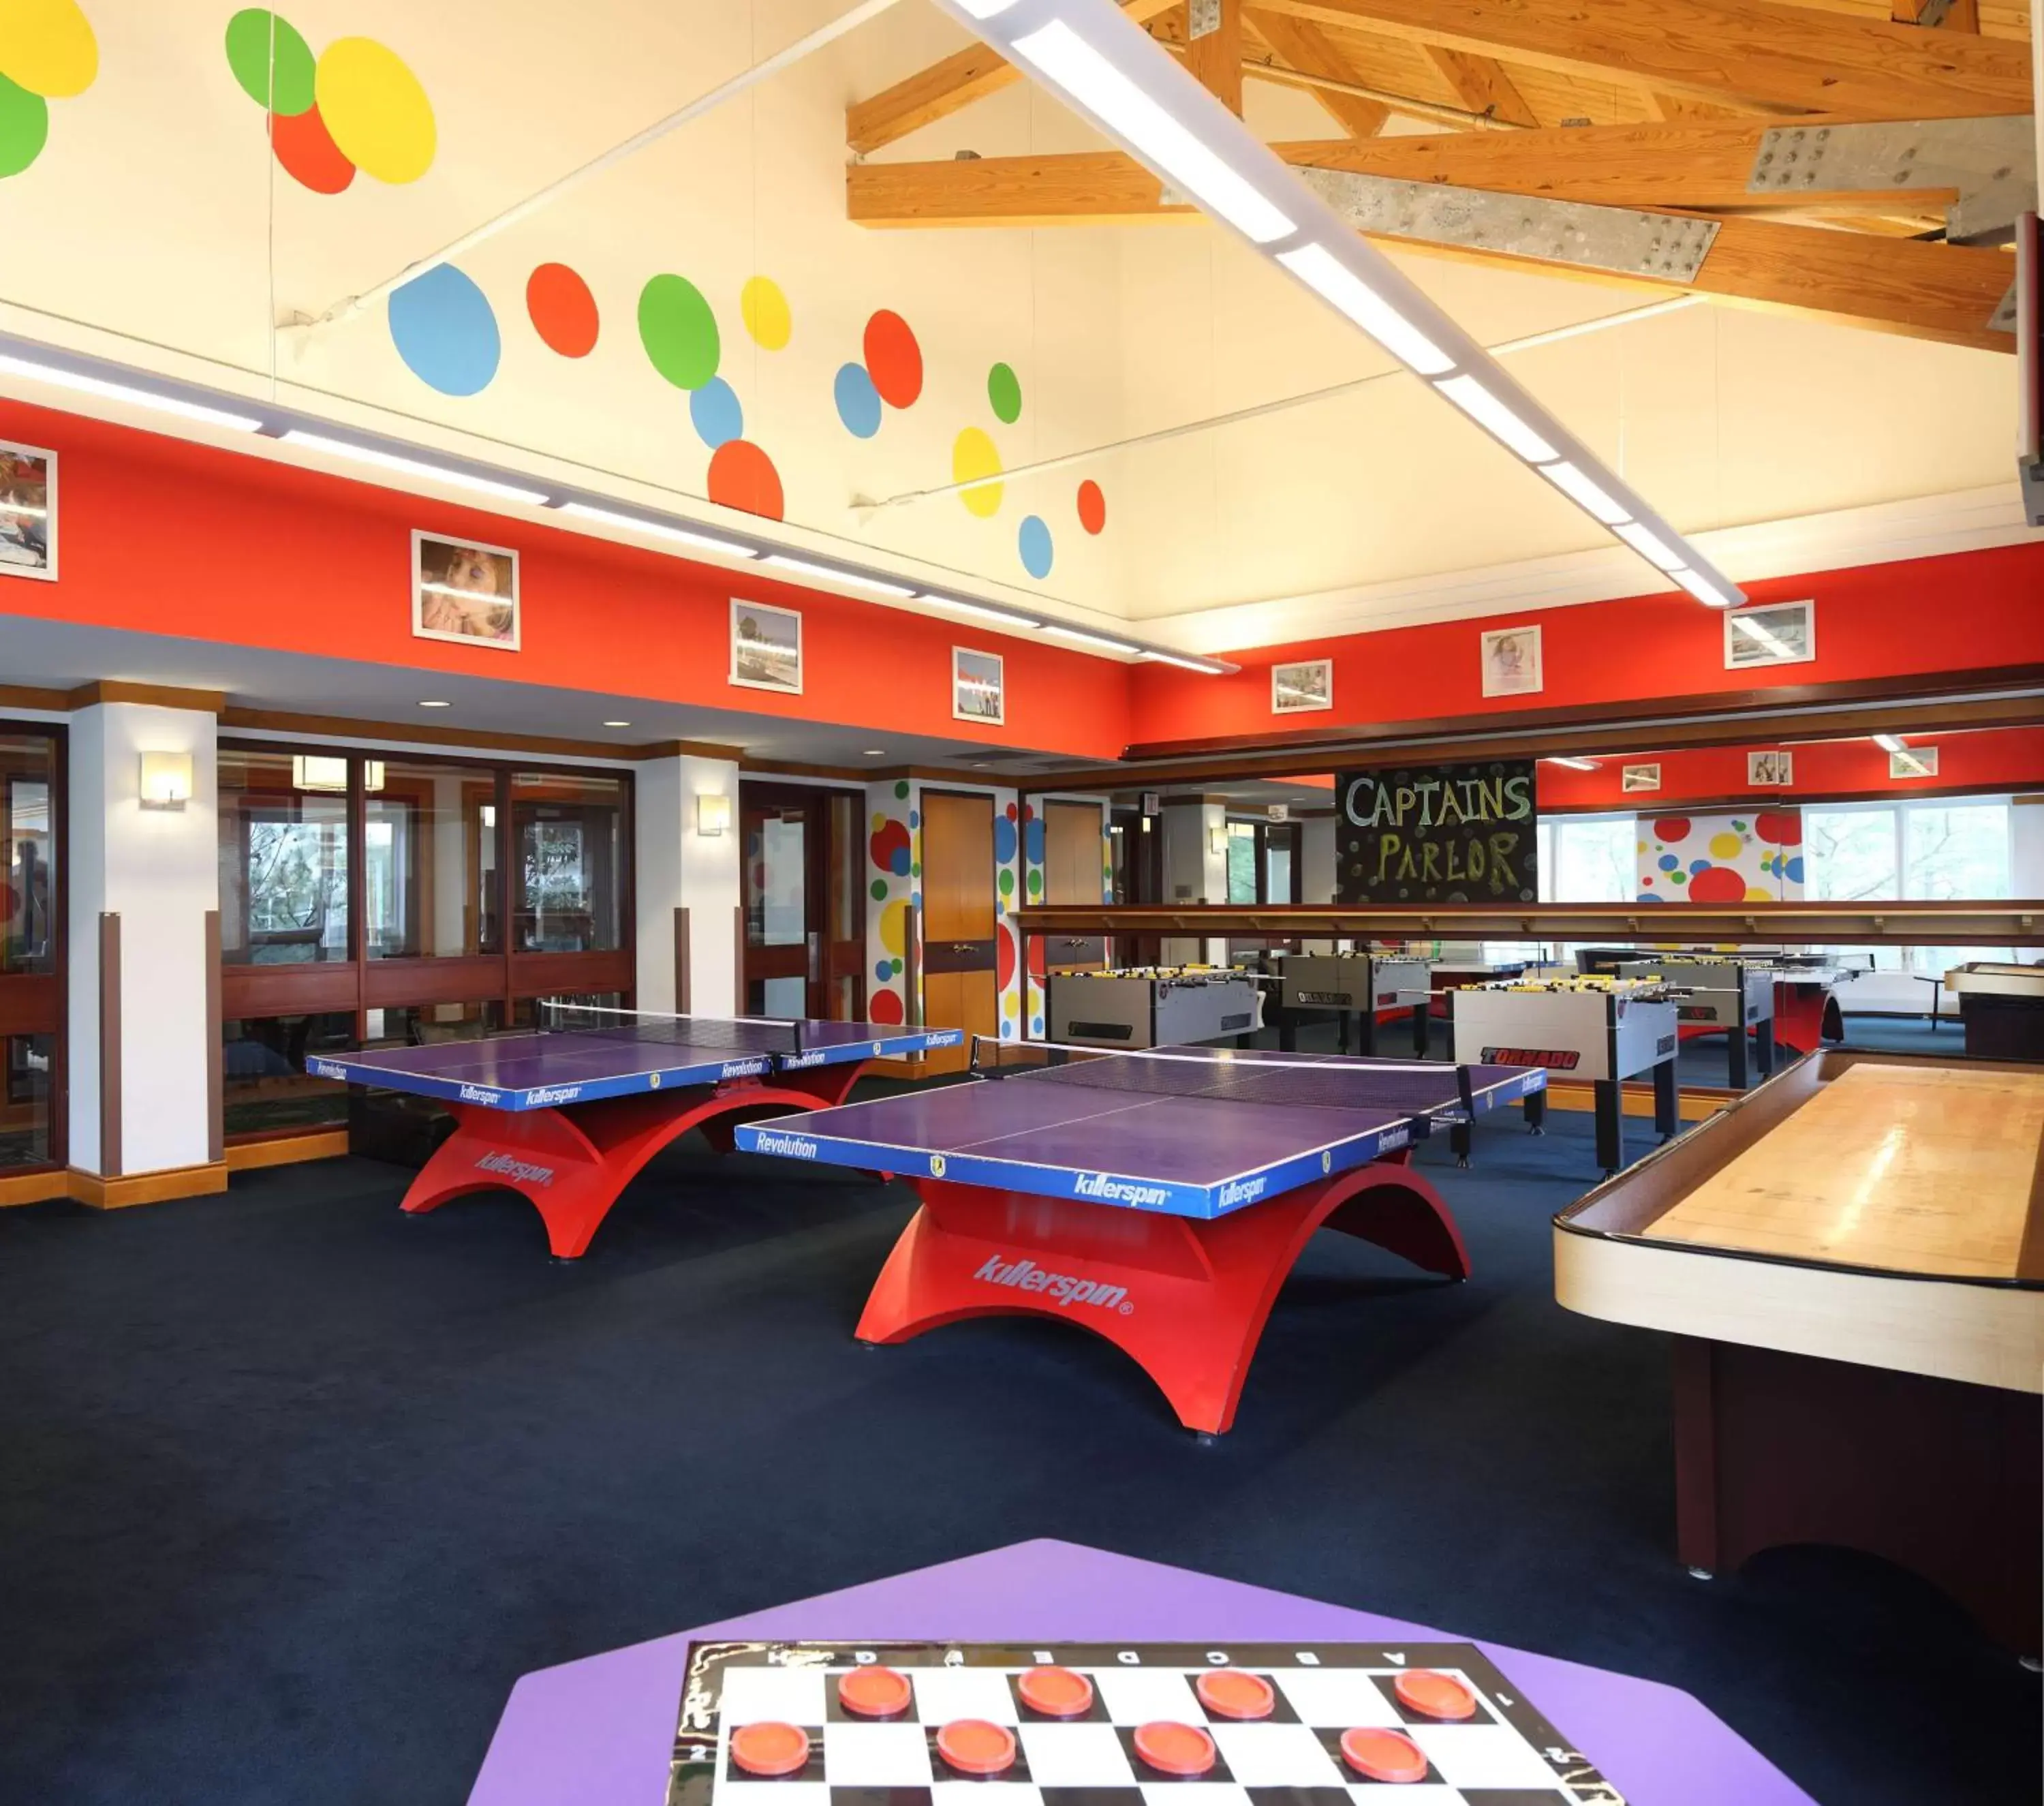 Fitness centre/facilities, Billiards in Hyatt Regency Chesapeake Bay Golf Resort, Spa & Marina